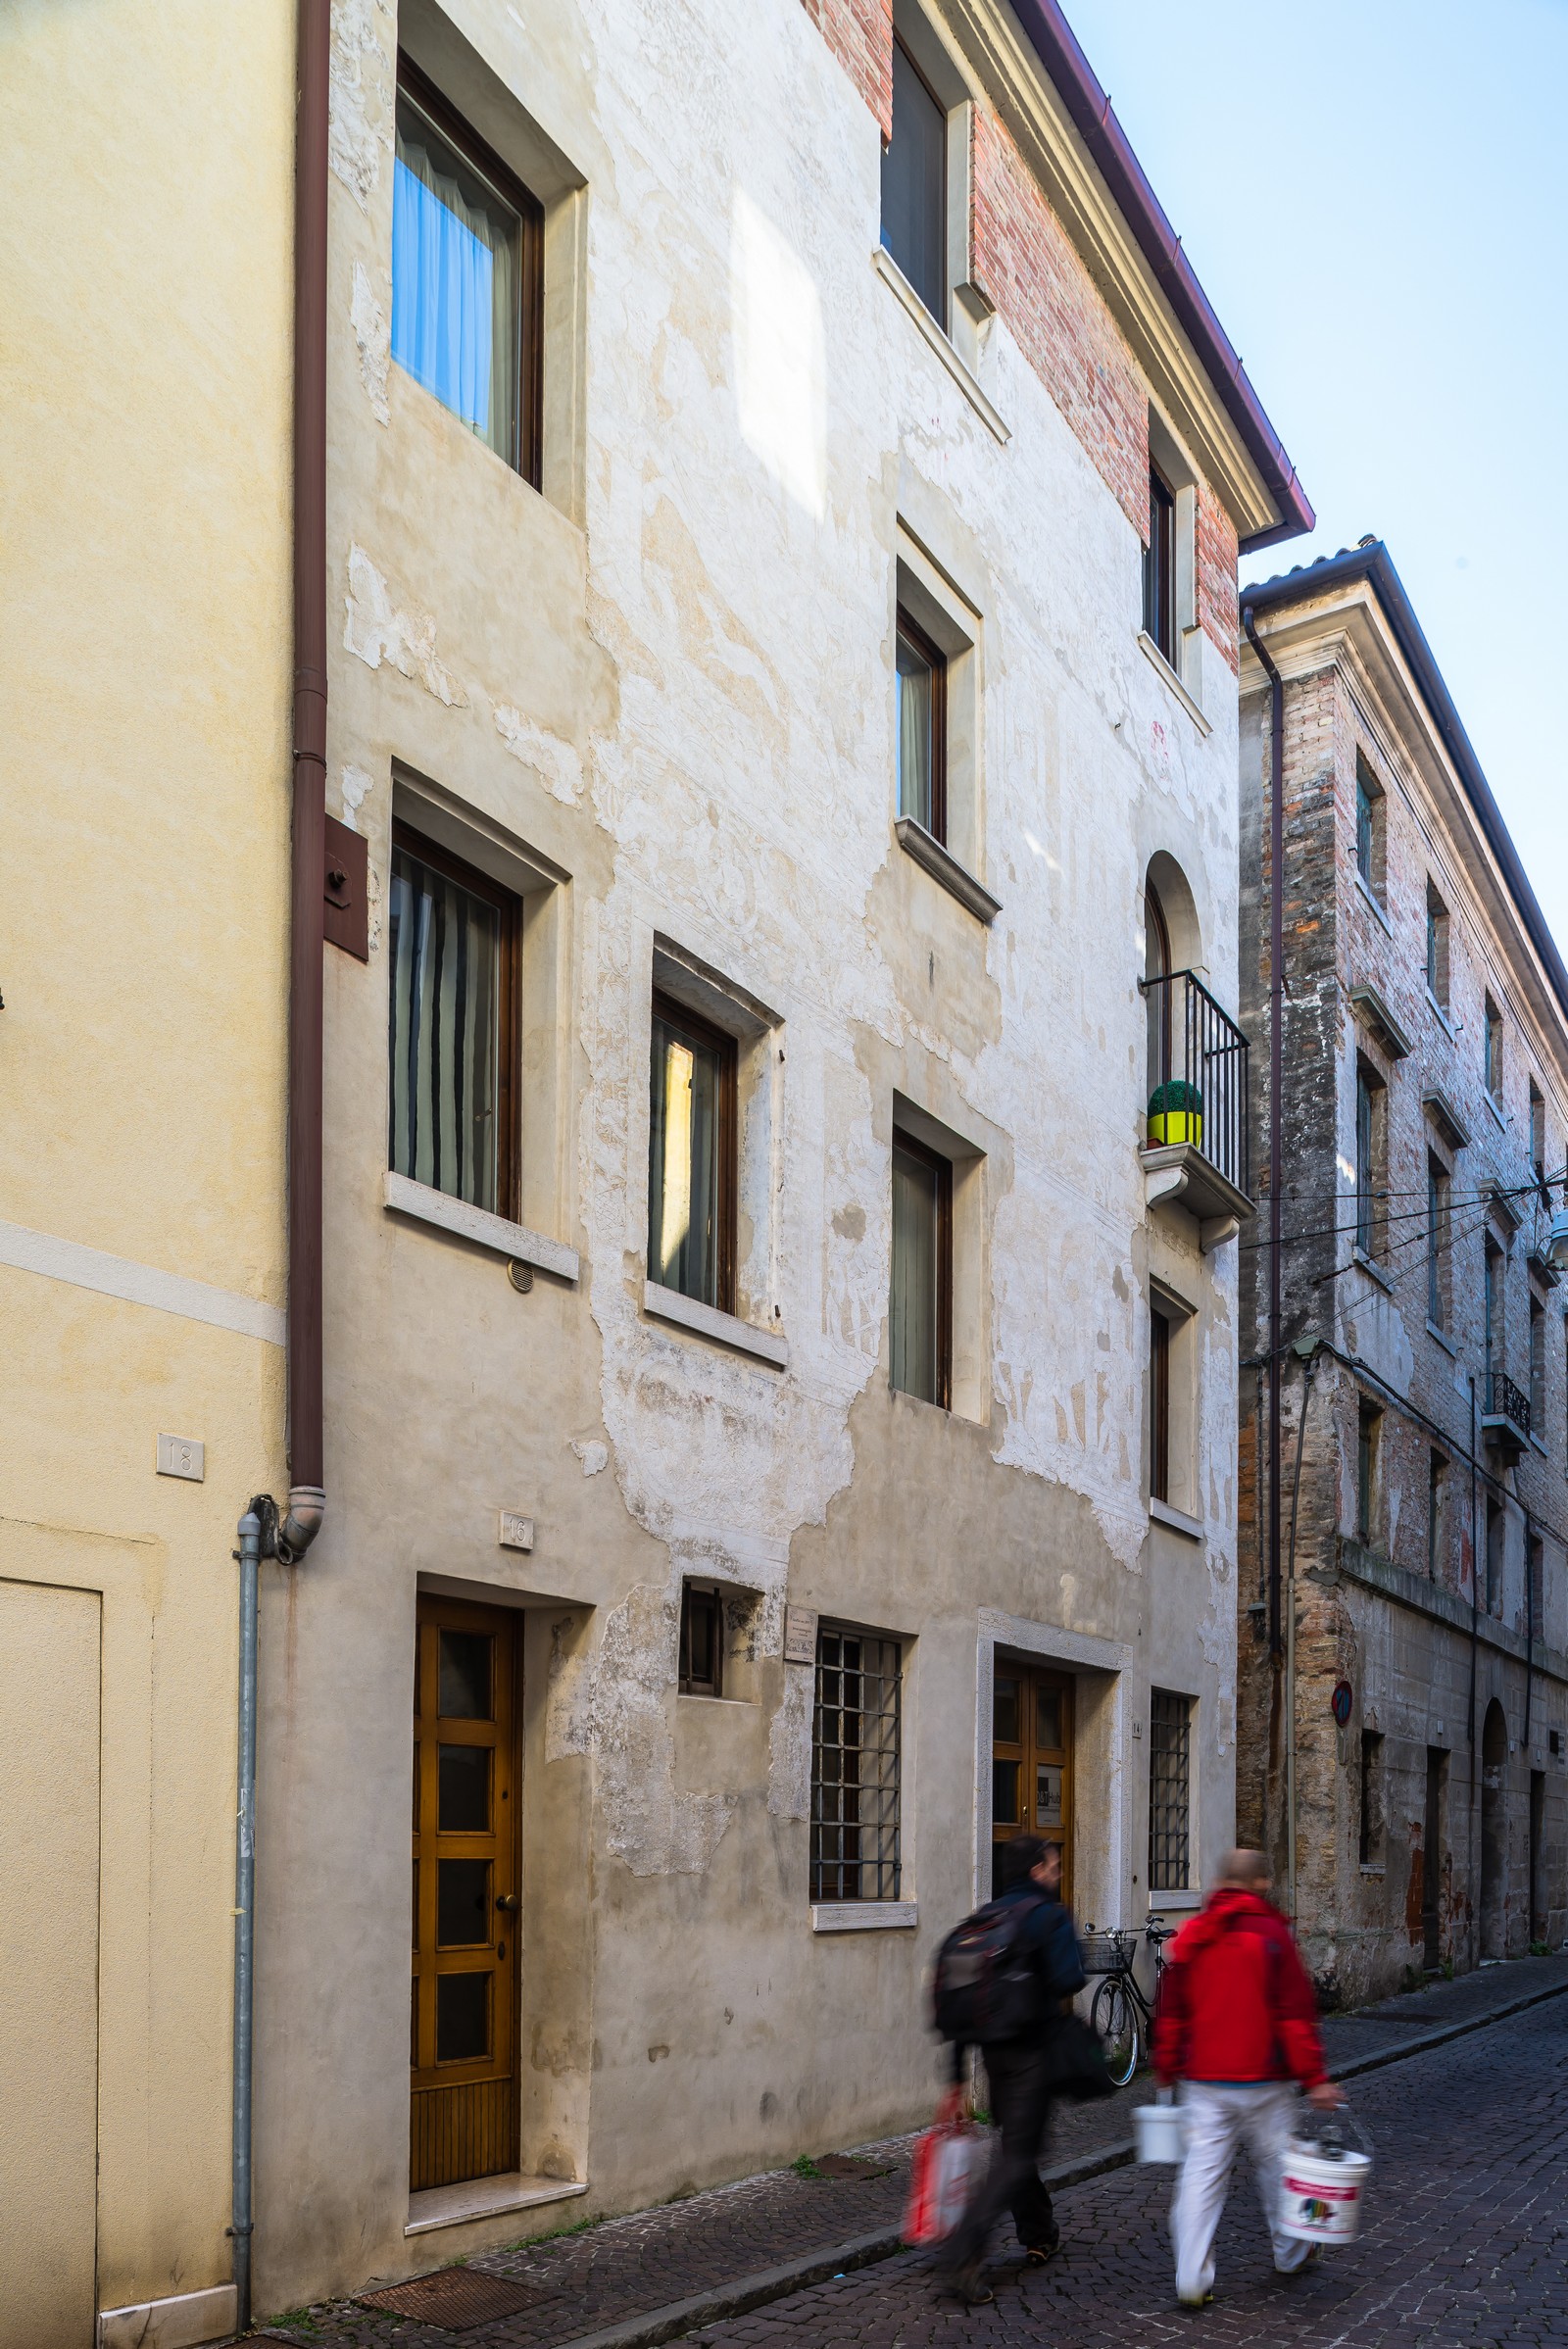 Edificio del XVI secolo (casa) - Treviso (TV)  (XVI)